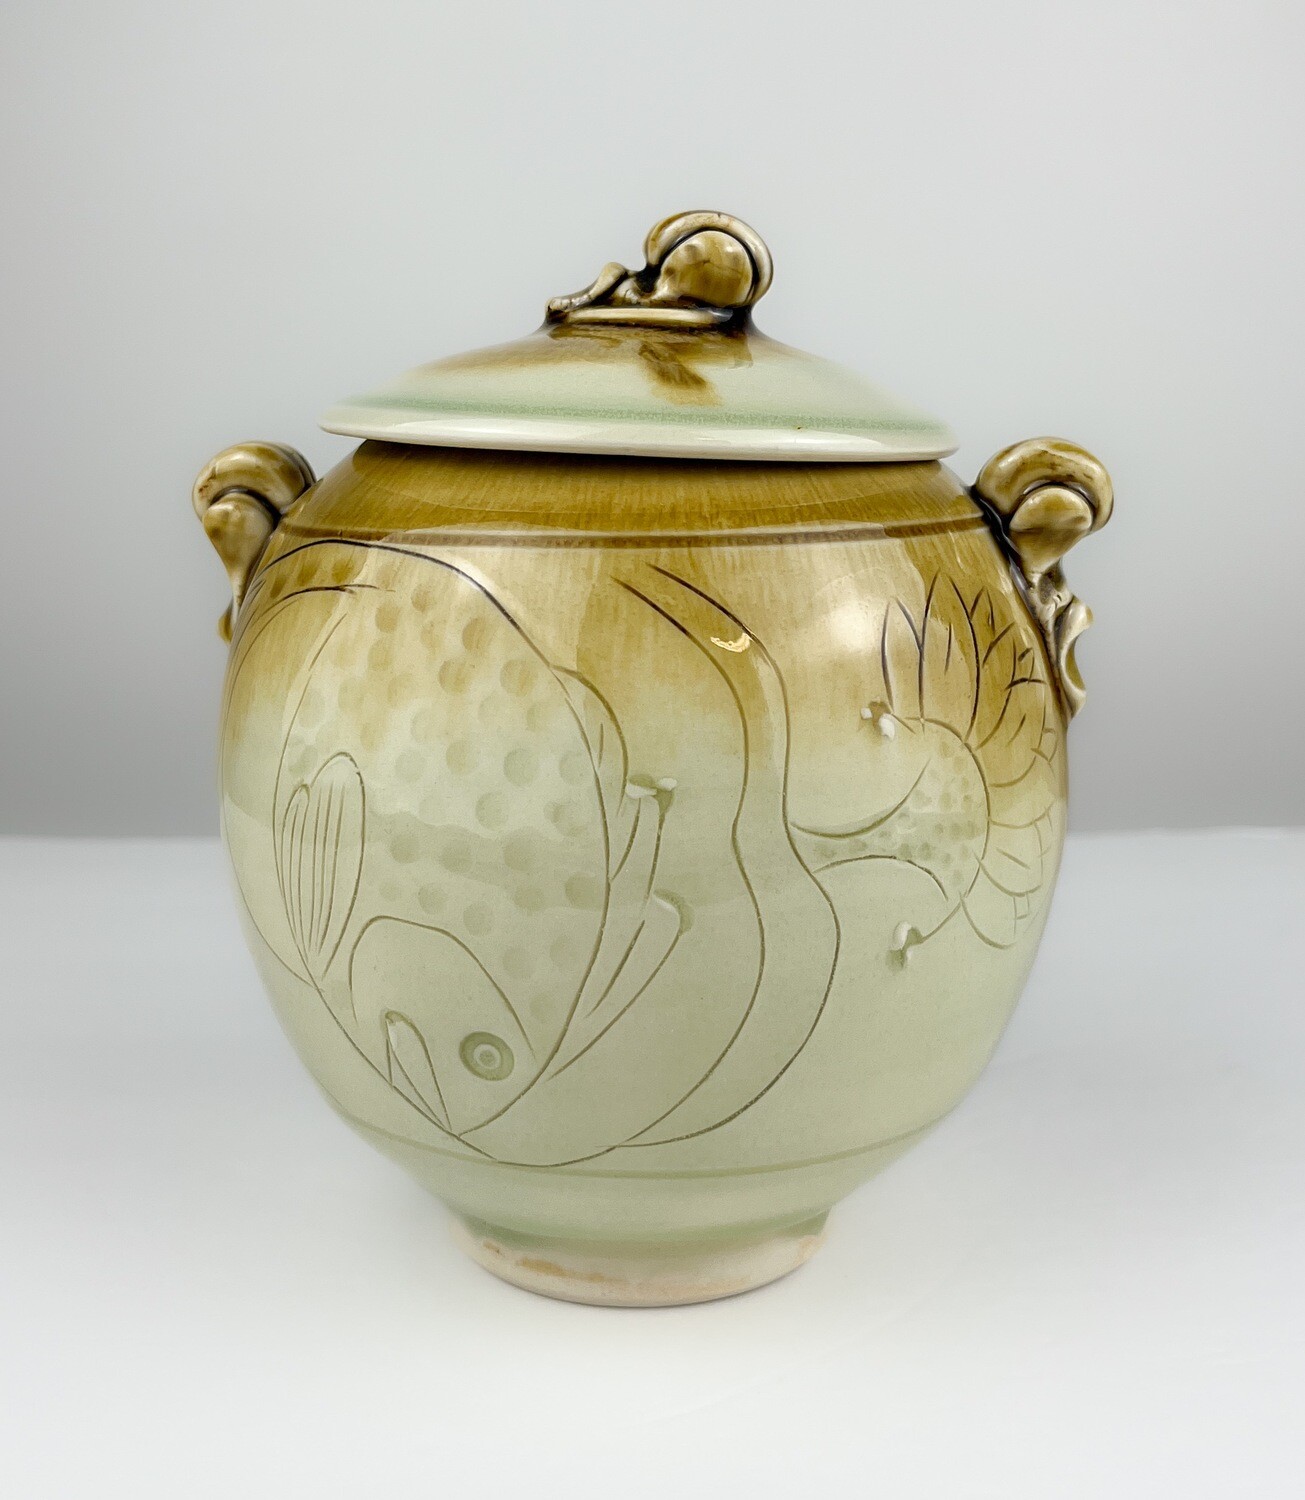 Celadon Glaze Covered Pottery Jar